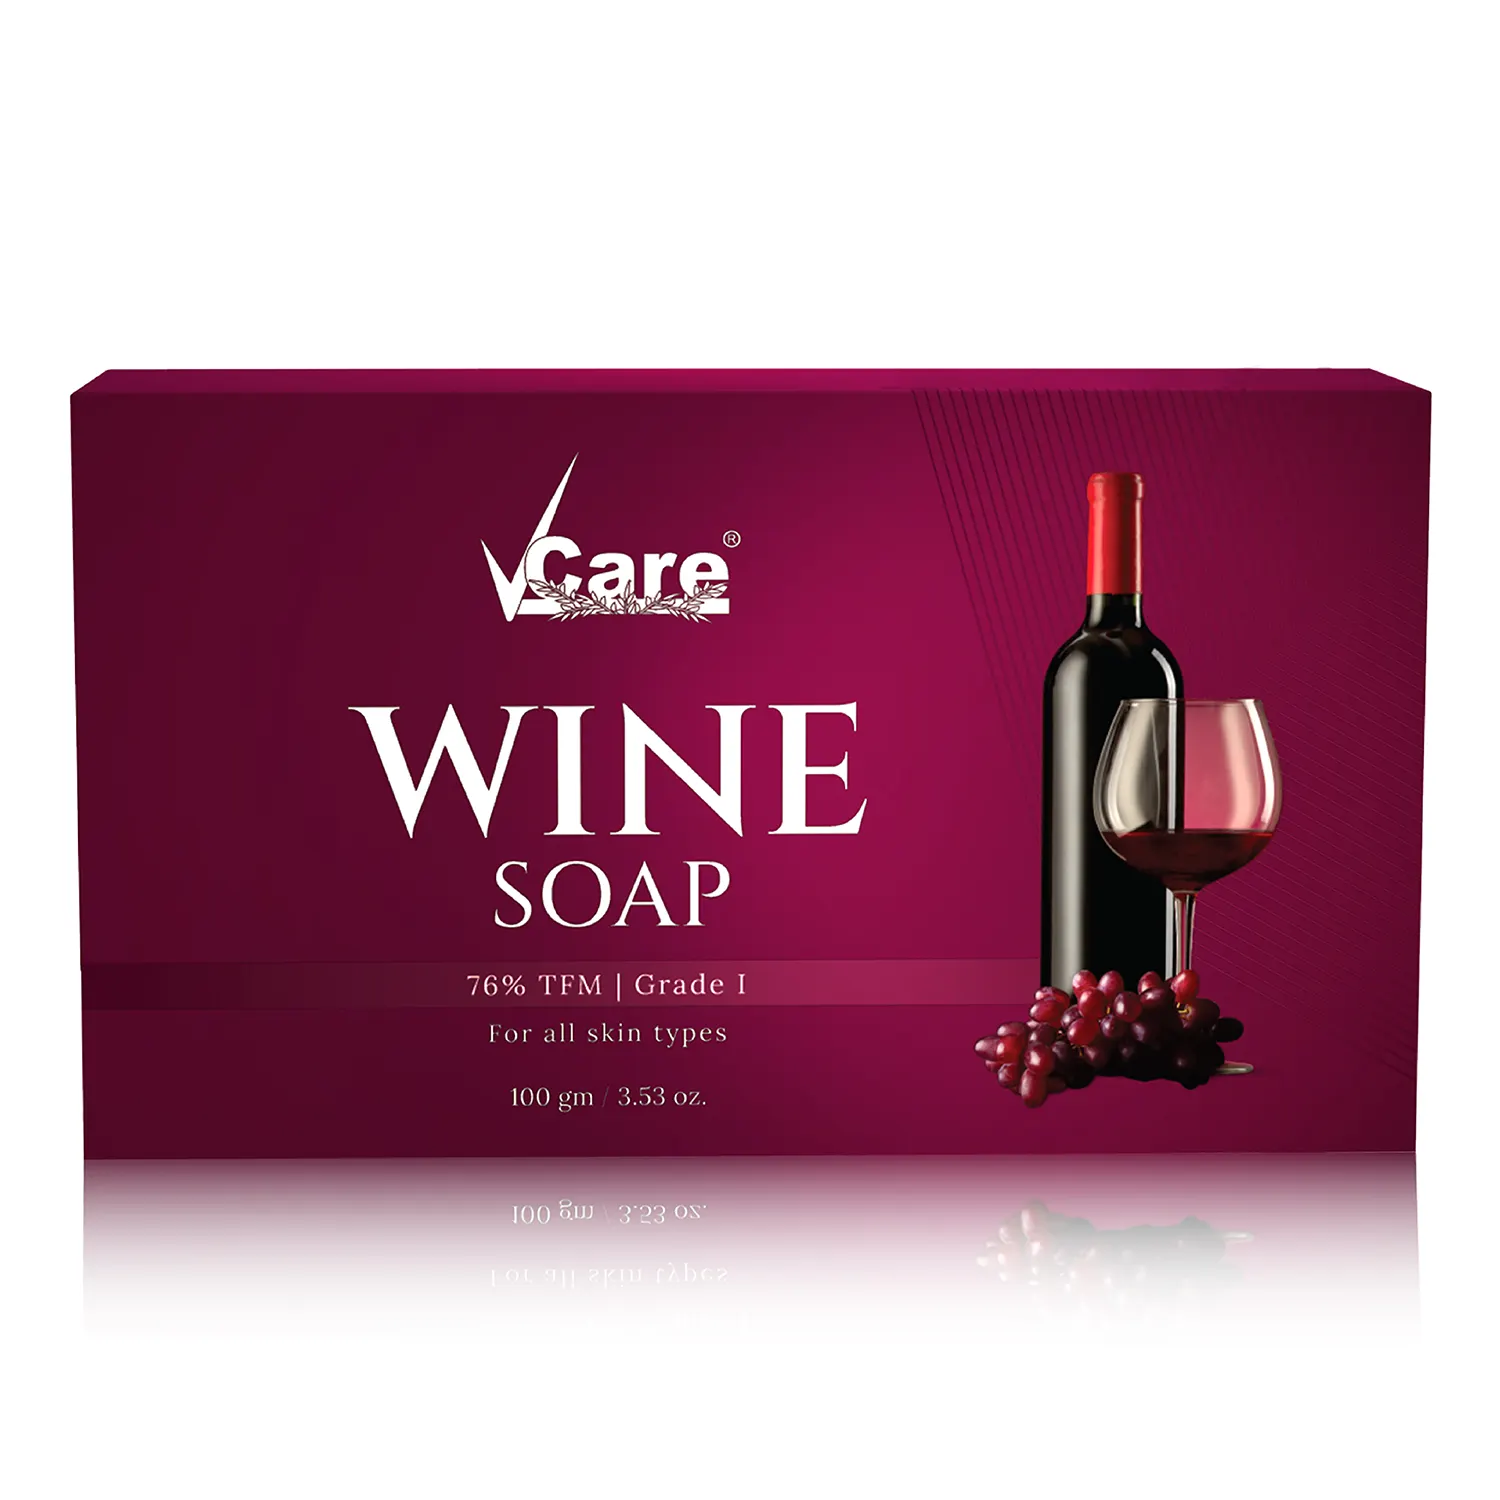 Red wine soap,wine soap,vcare red wine soap,bathing soap,wine soap v care